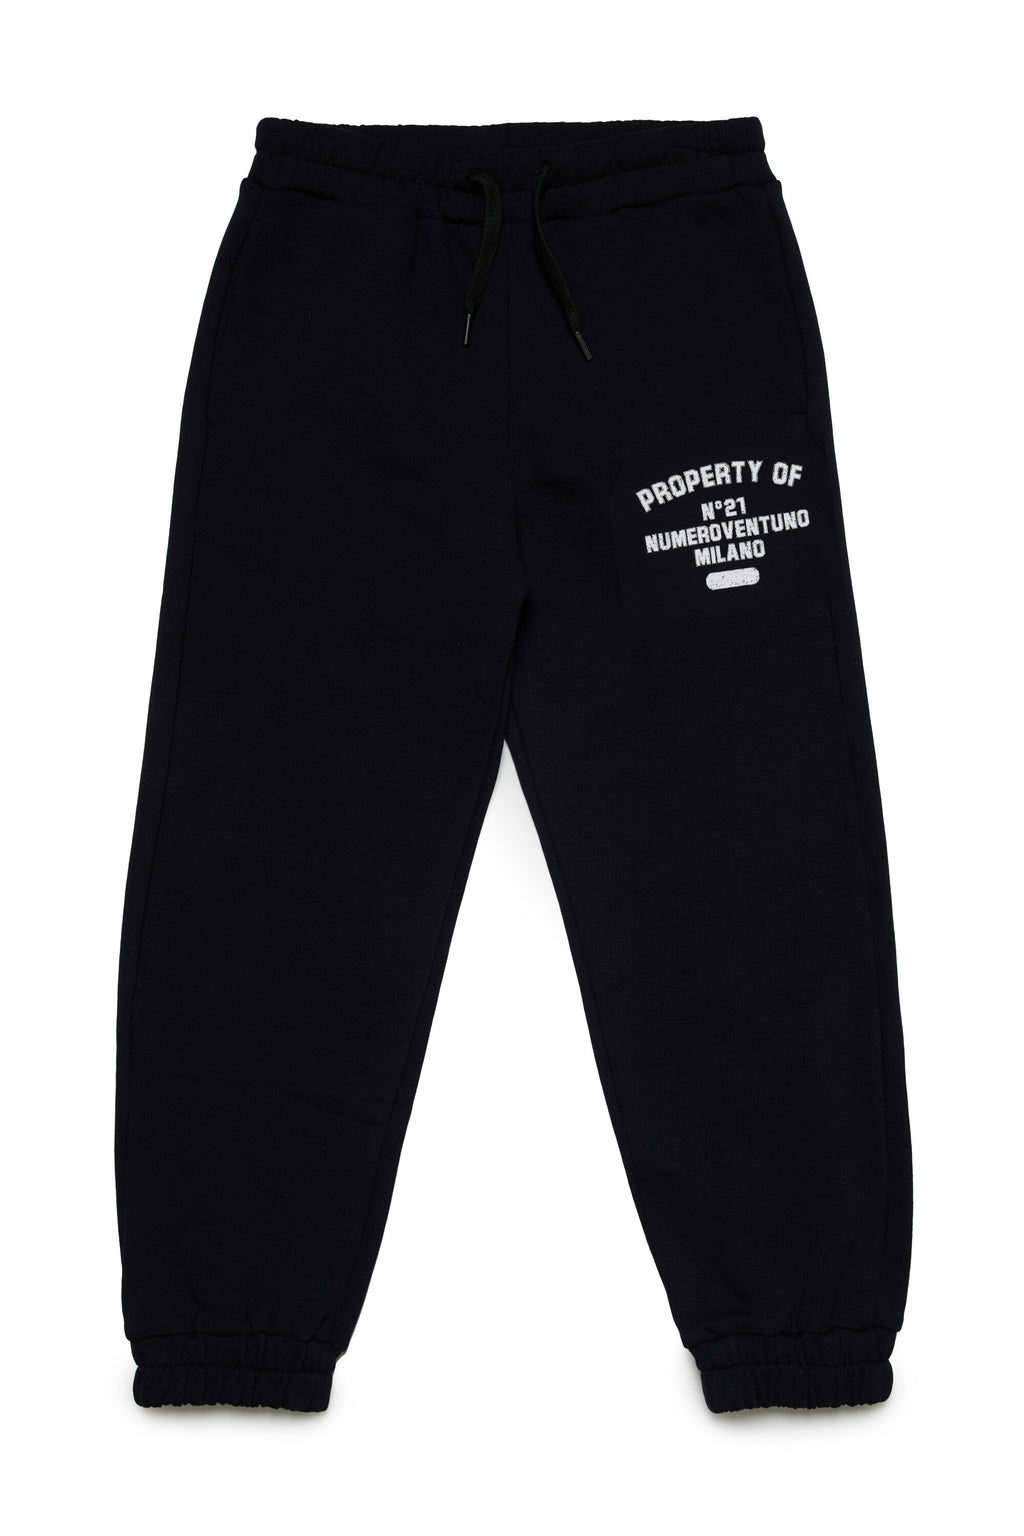 Pantalones deportivos en chándal con logotipo vintage